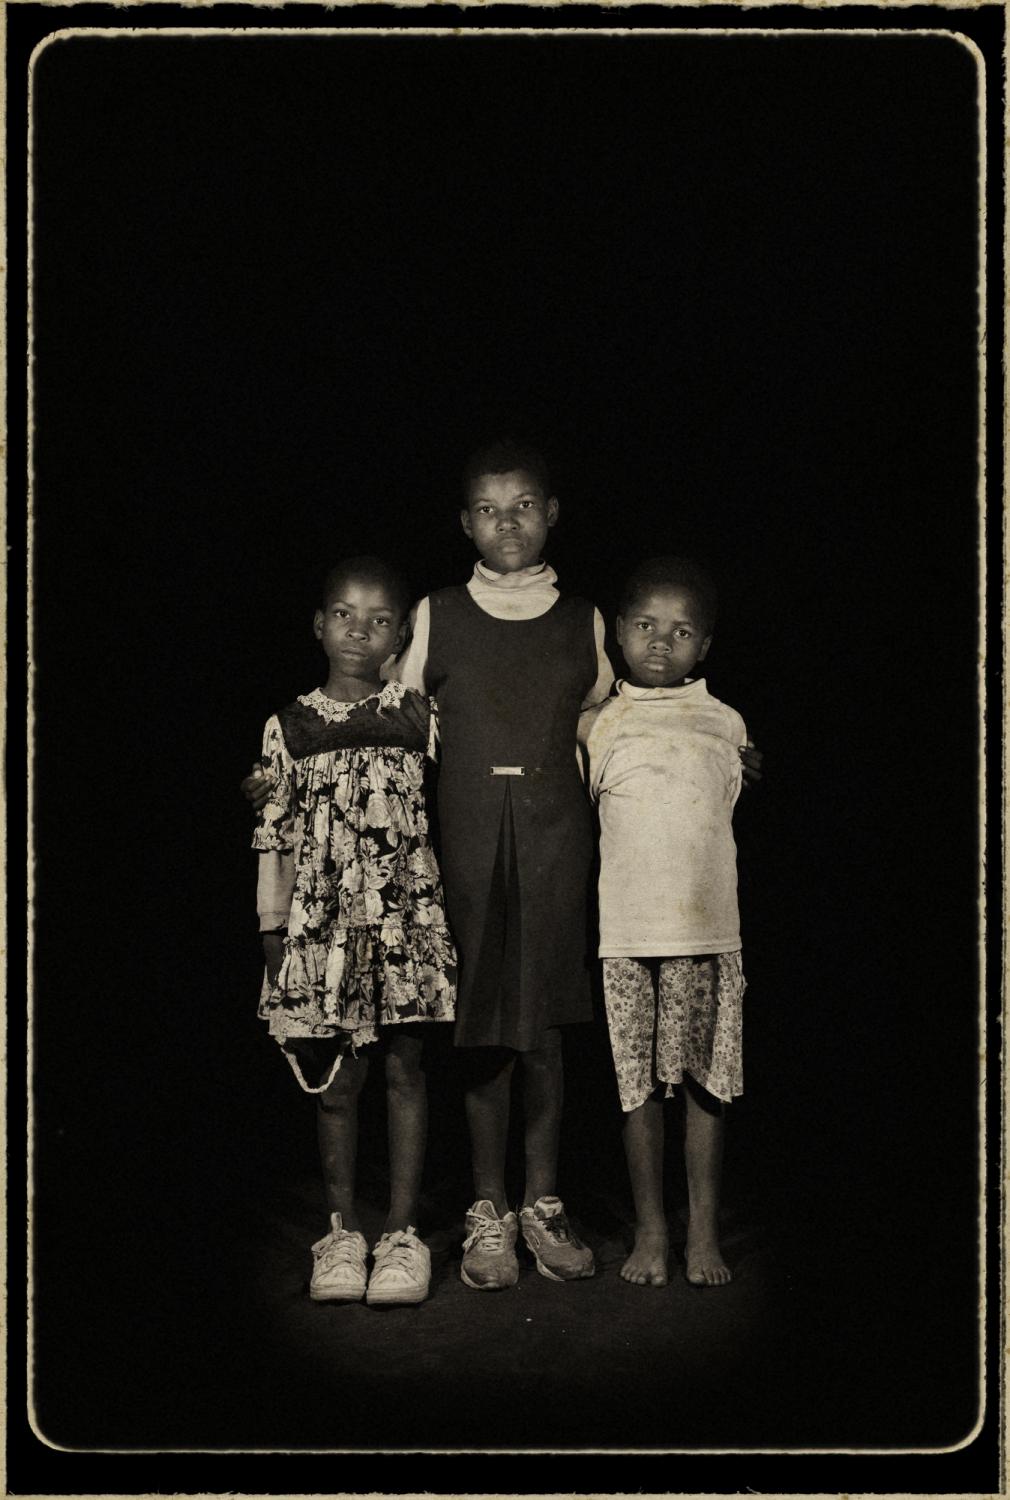 Orphans/ portraits - Hosea, Swaziland.
¨Orphans¨
Portrait of...